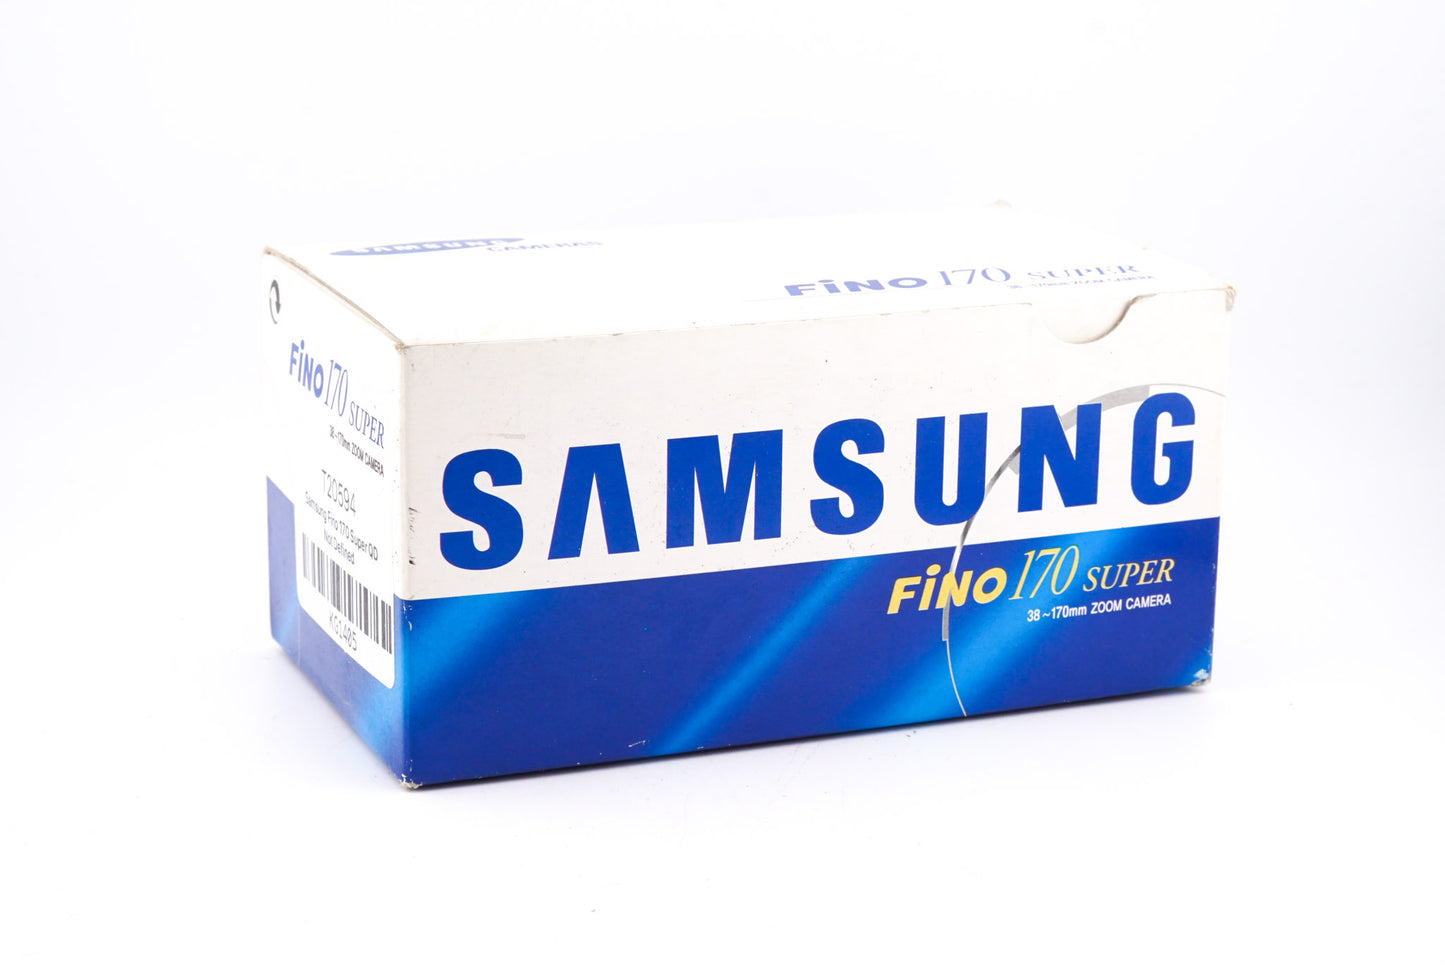 Samsung Fino 170 Super QD